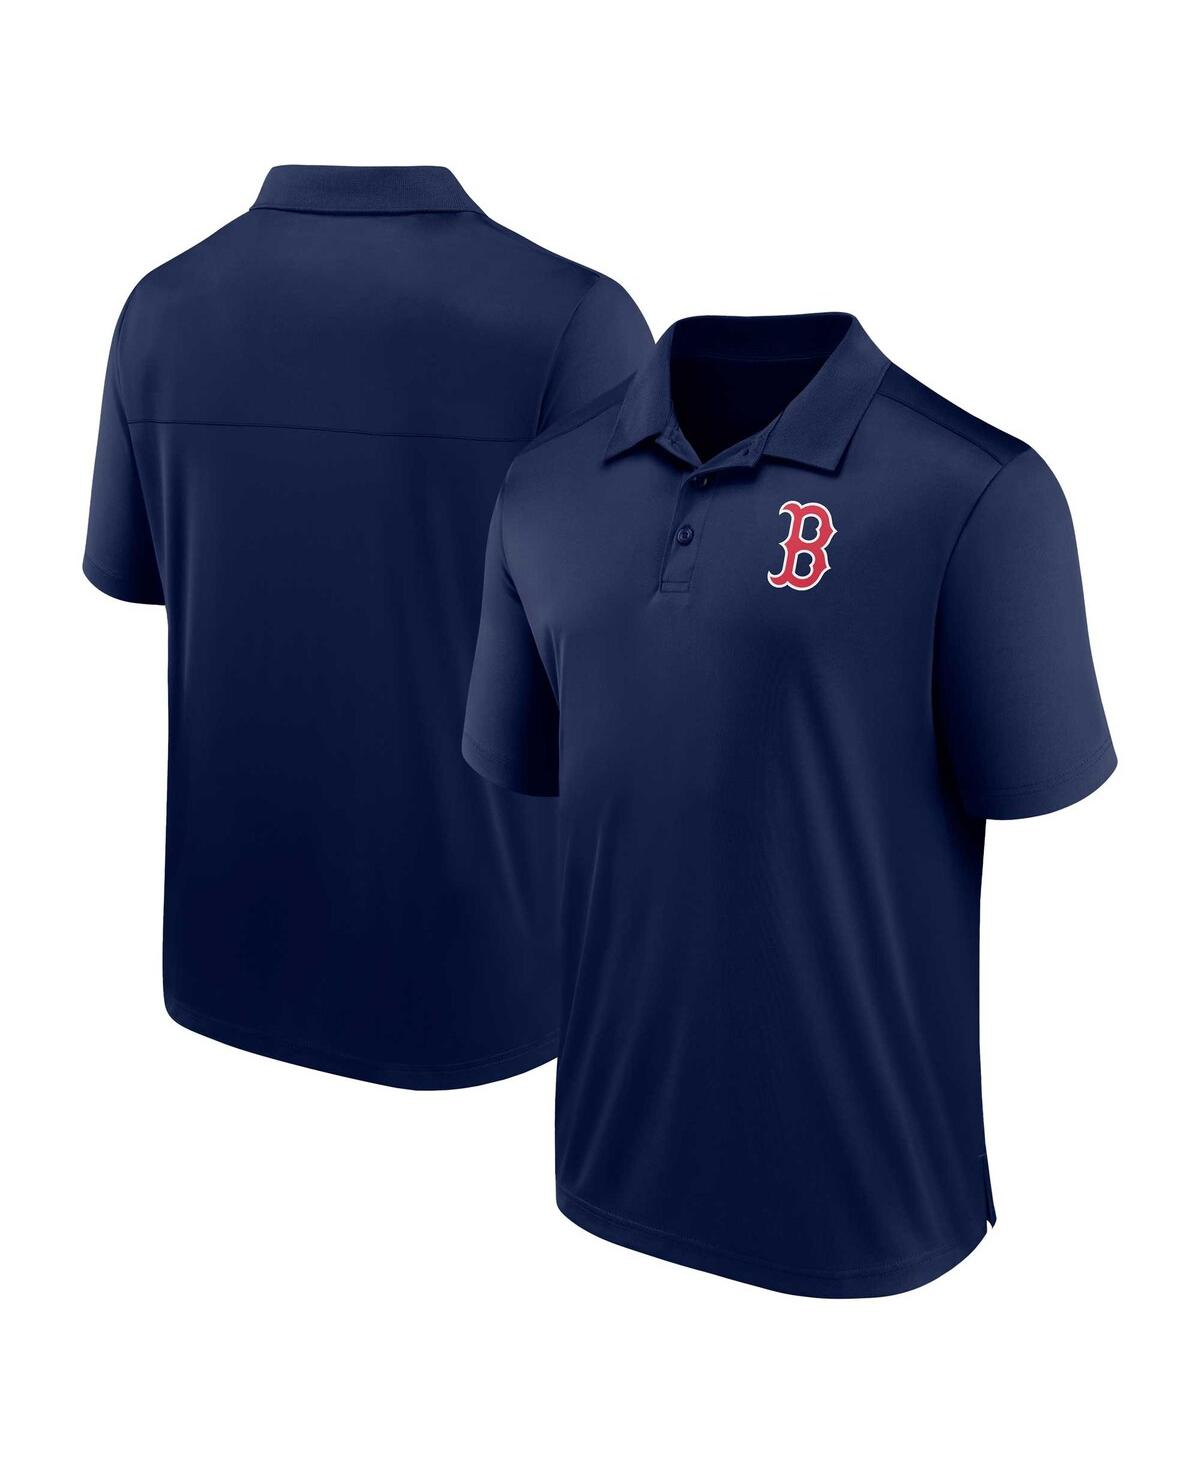 Men's Fanatics Navy Boston Red Sox Logo Polo Shirt - Navy